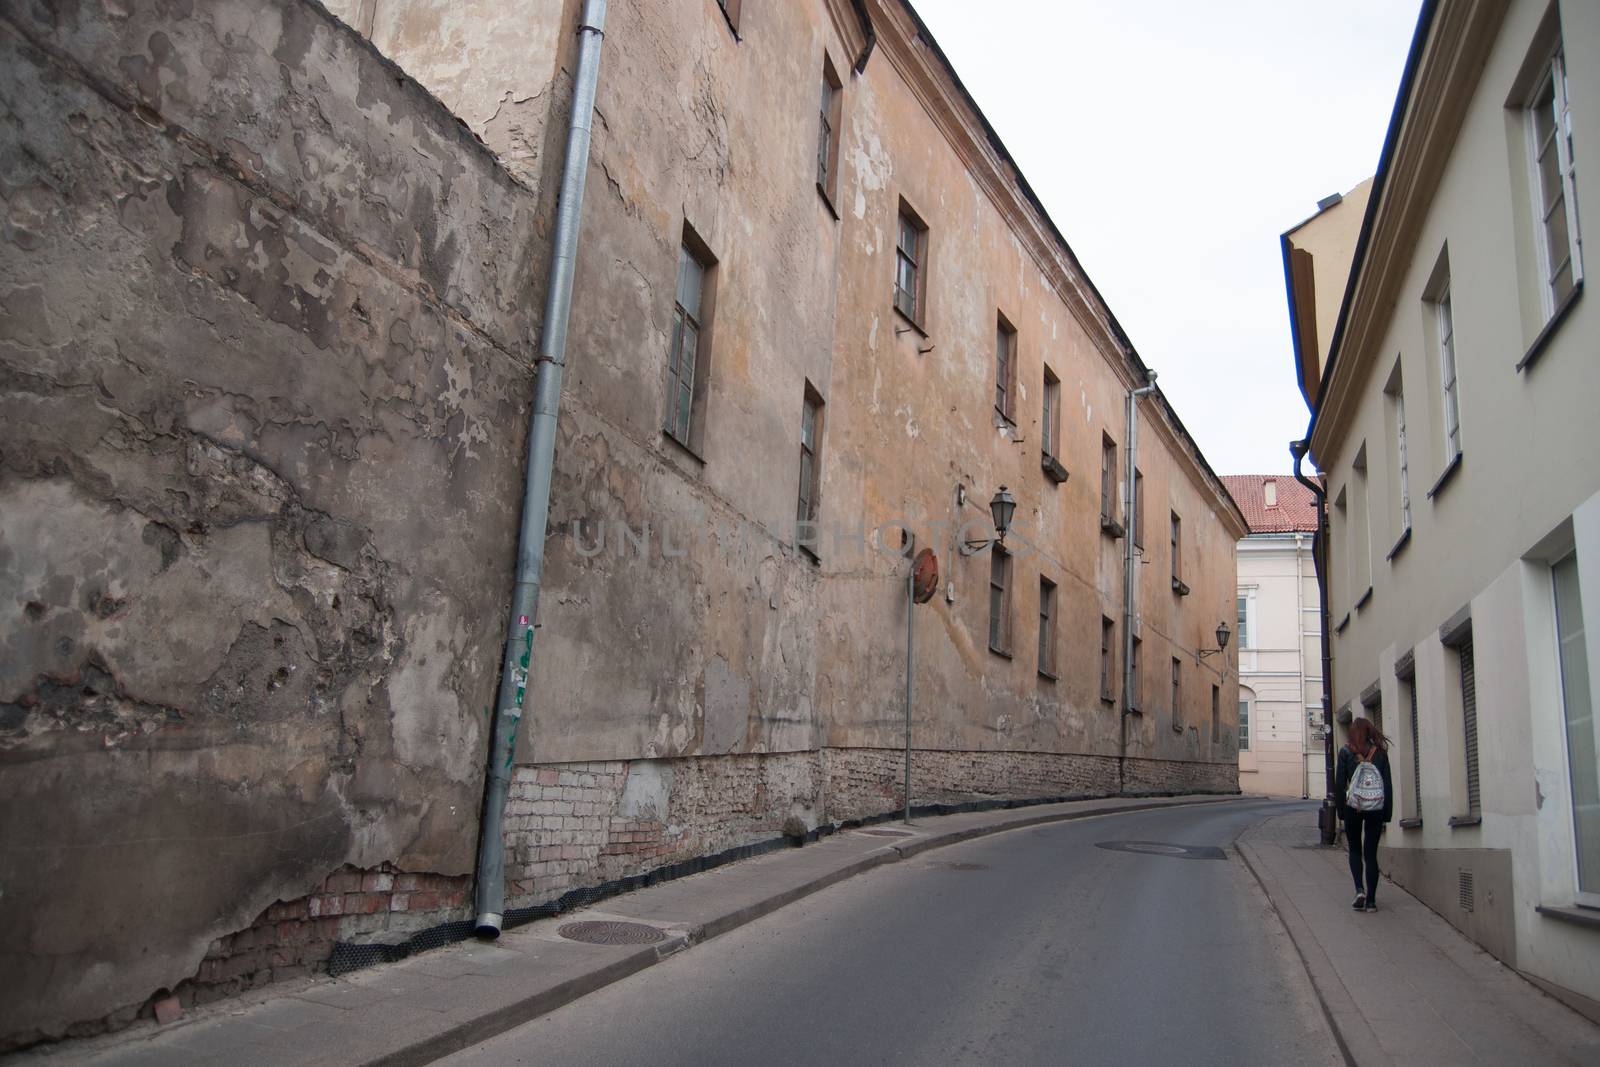 Vilnius streets by javax